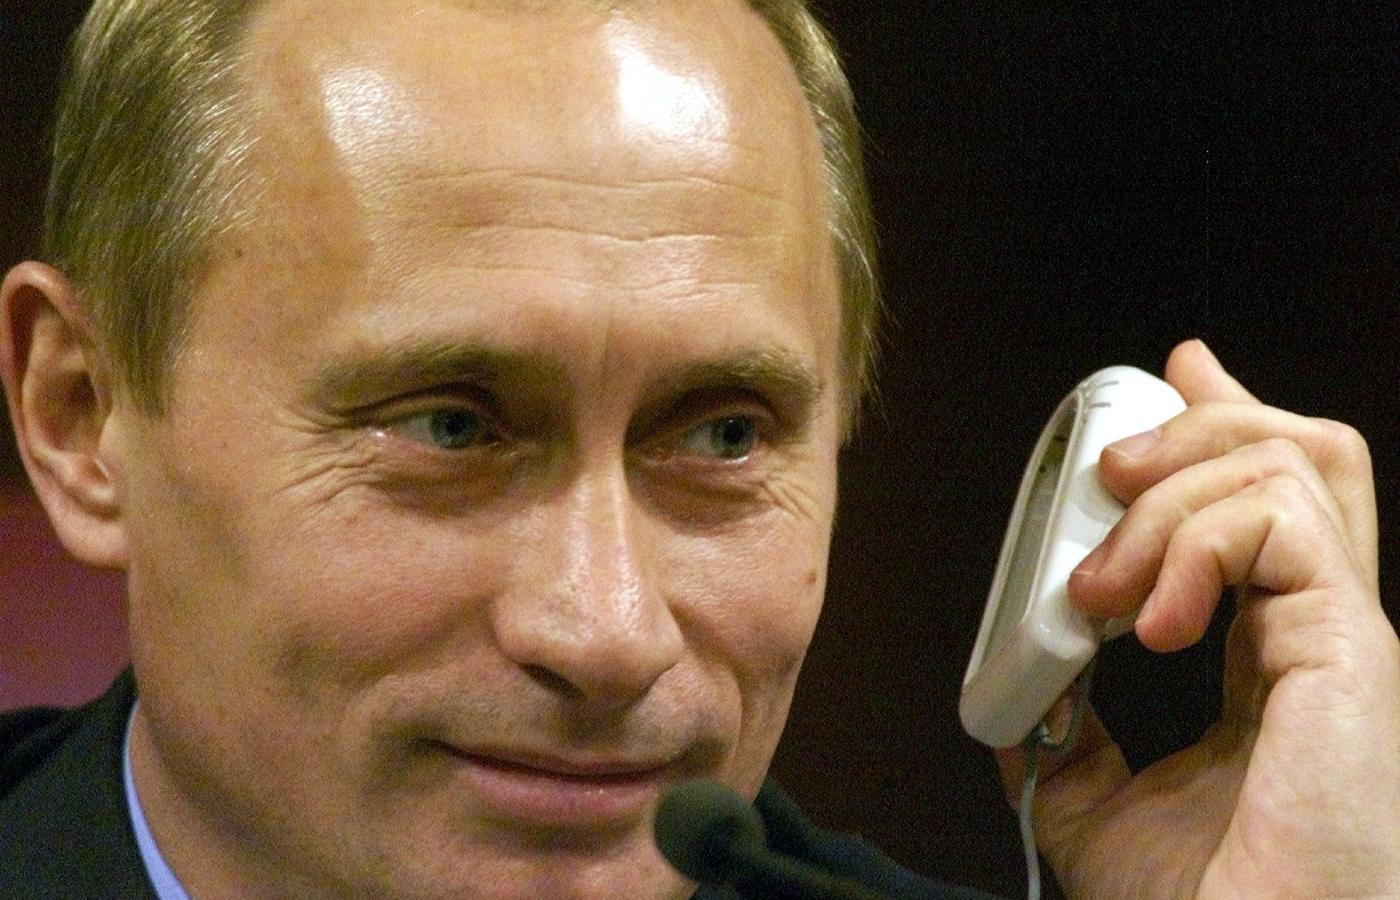 Władimir Putin proponuje Rosji trzecią drogę rozwoju.